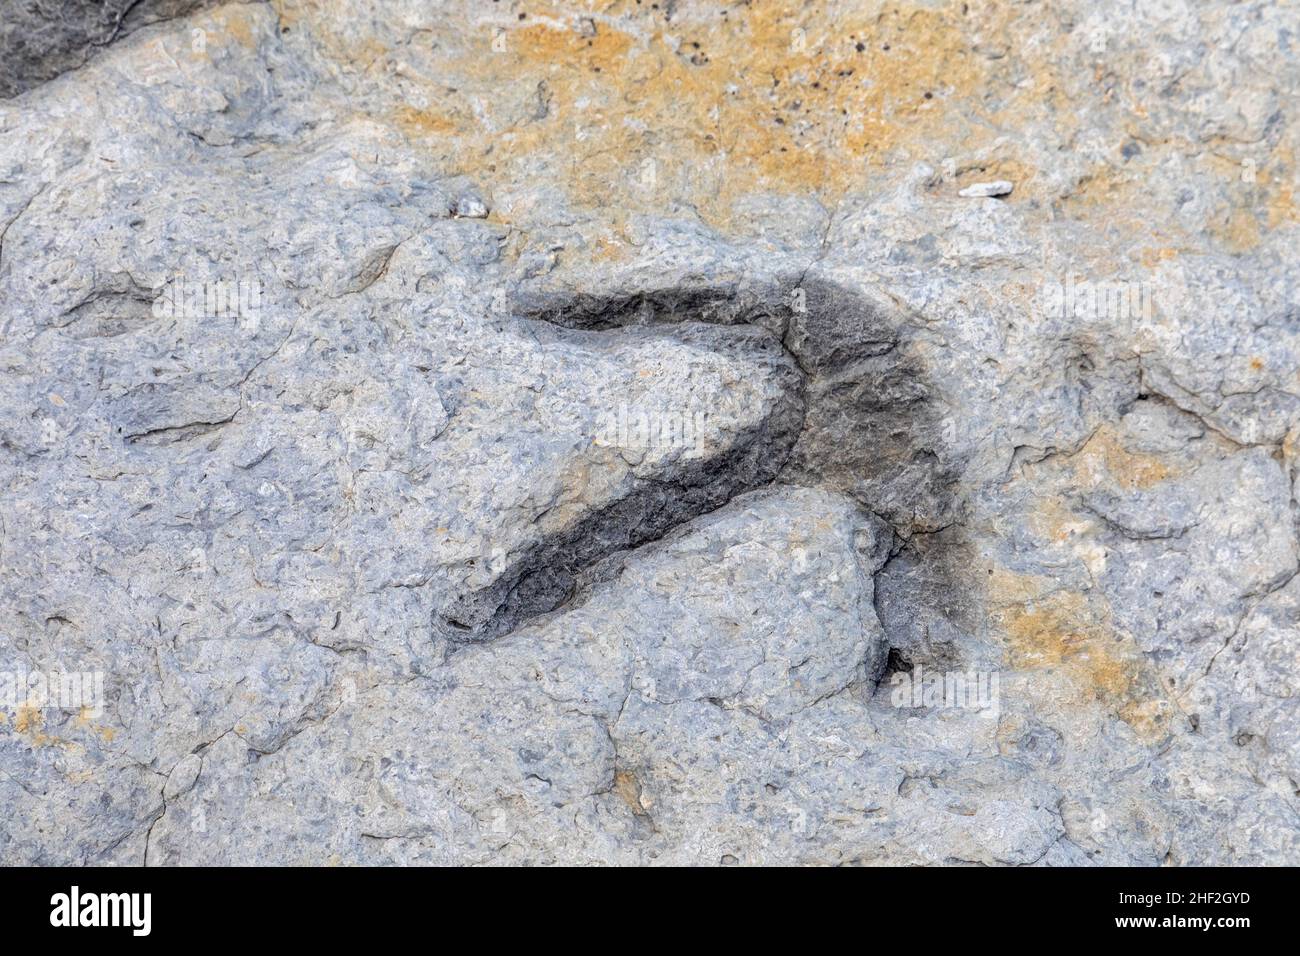 Morrison, Colorado - le tracce di un ortinomimide, un dinosauro onnivoro, a Dinosaur Ridge. I visitatori possono vedere centinaia di orme di dinosauri lungo la strada Foto Stock